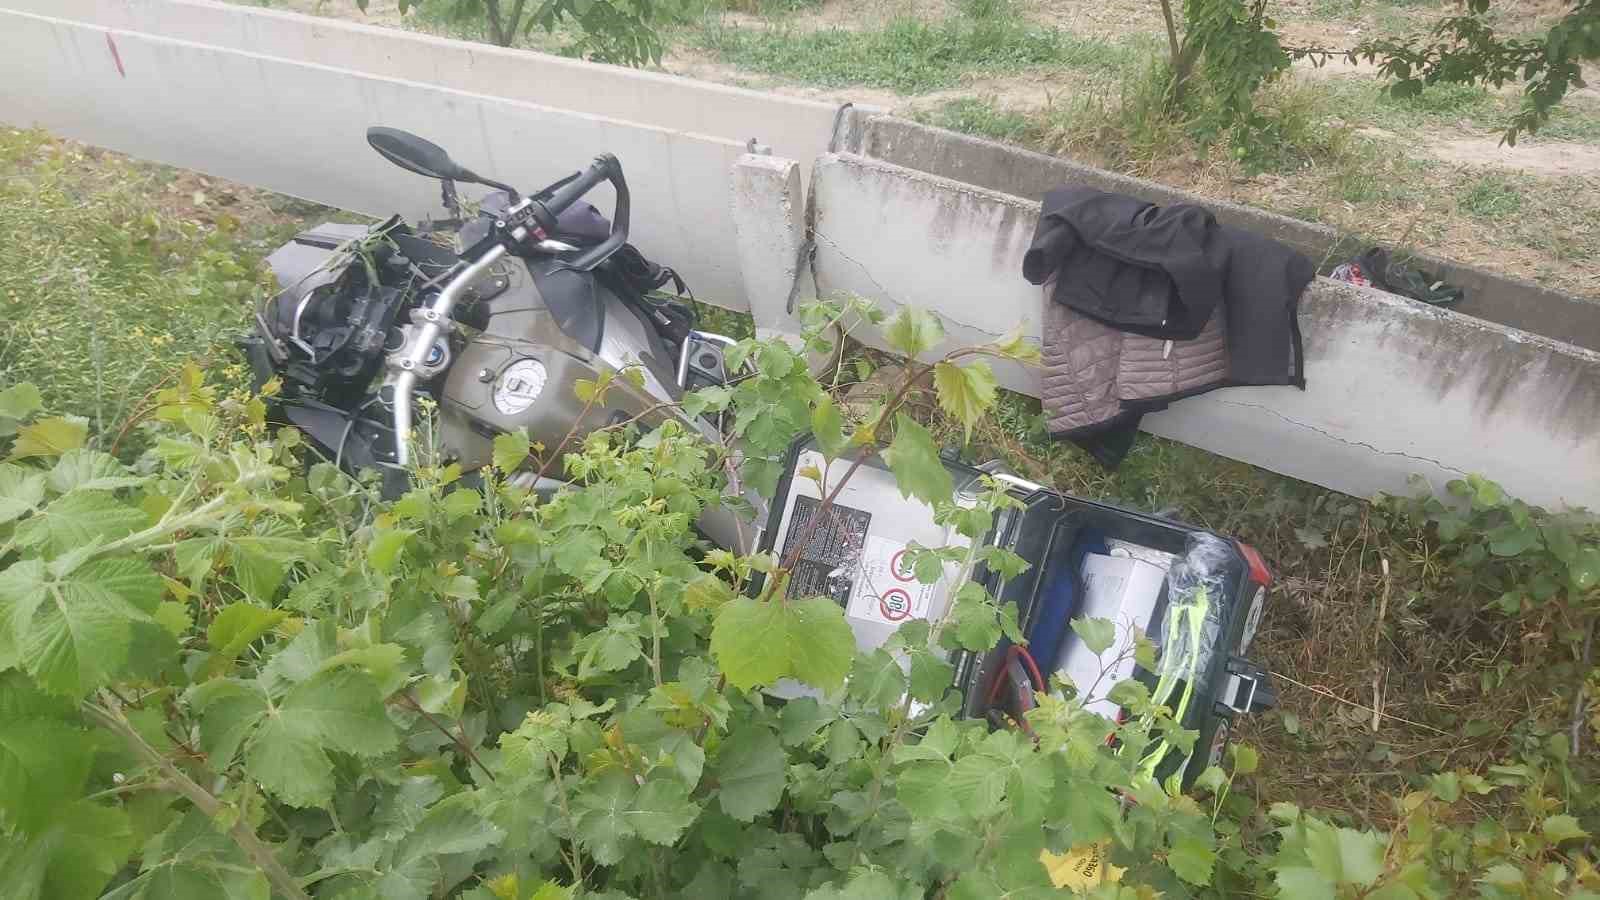 Virajı alamayan motosiklet su kanalına çarptı: 1 ölü, 1 yaralı